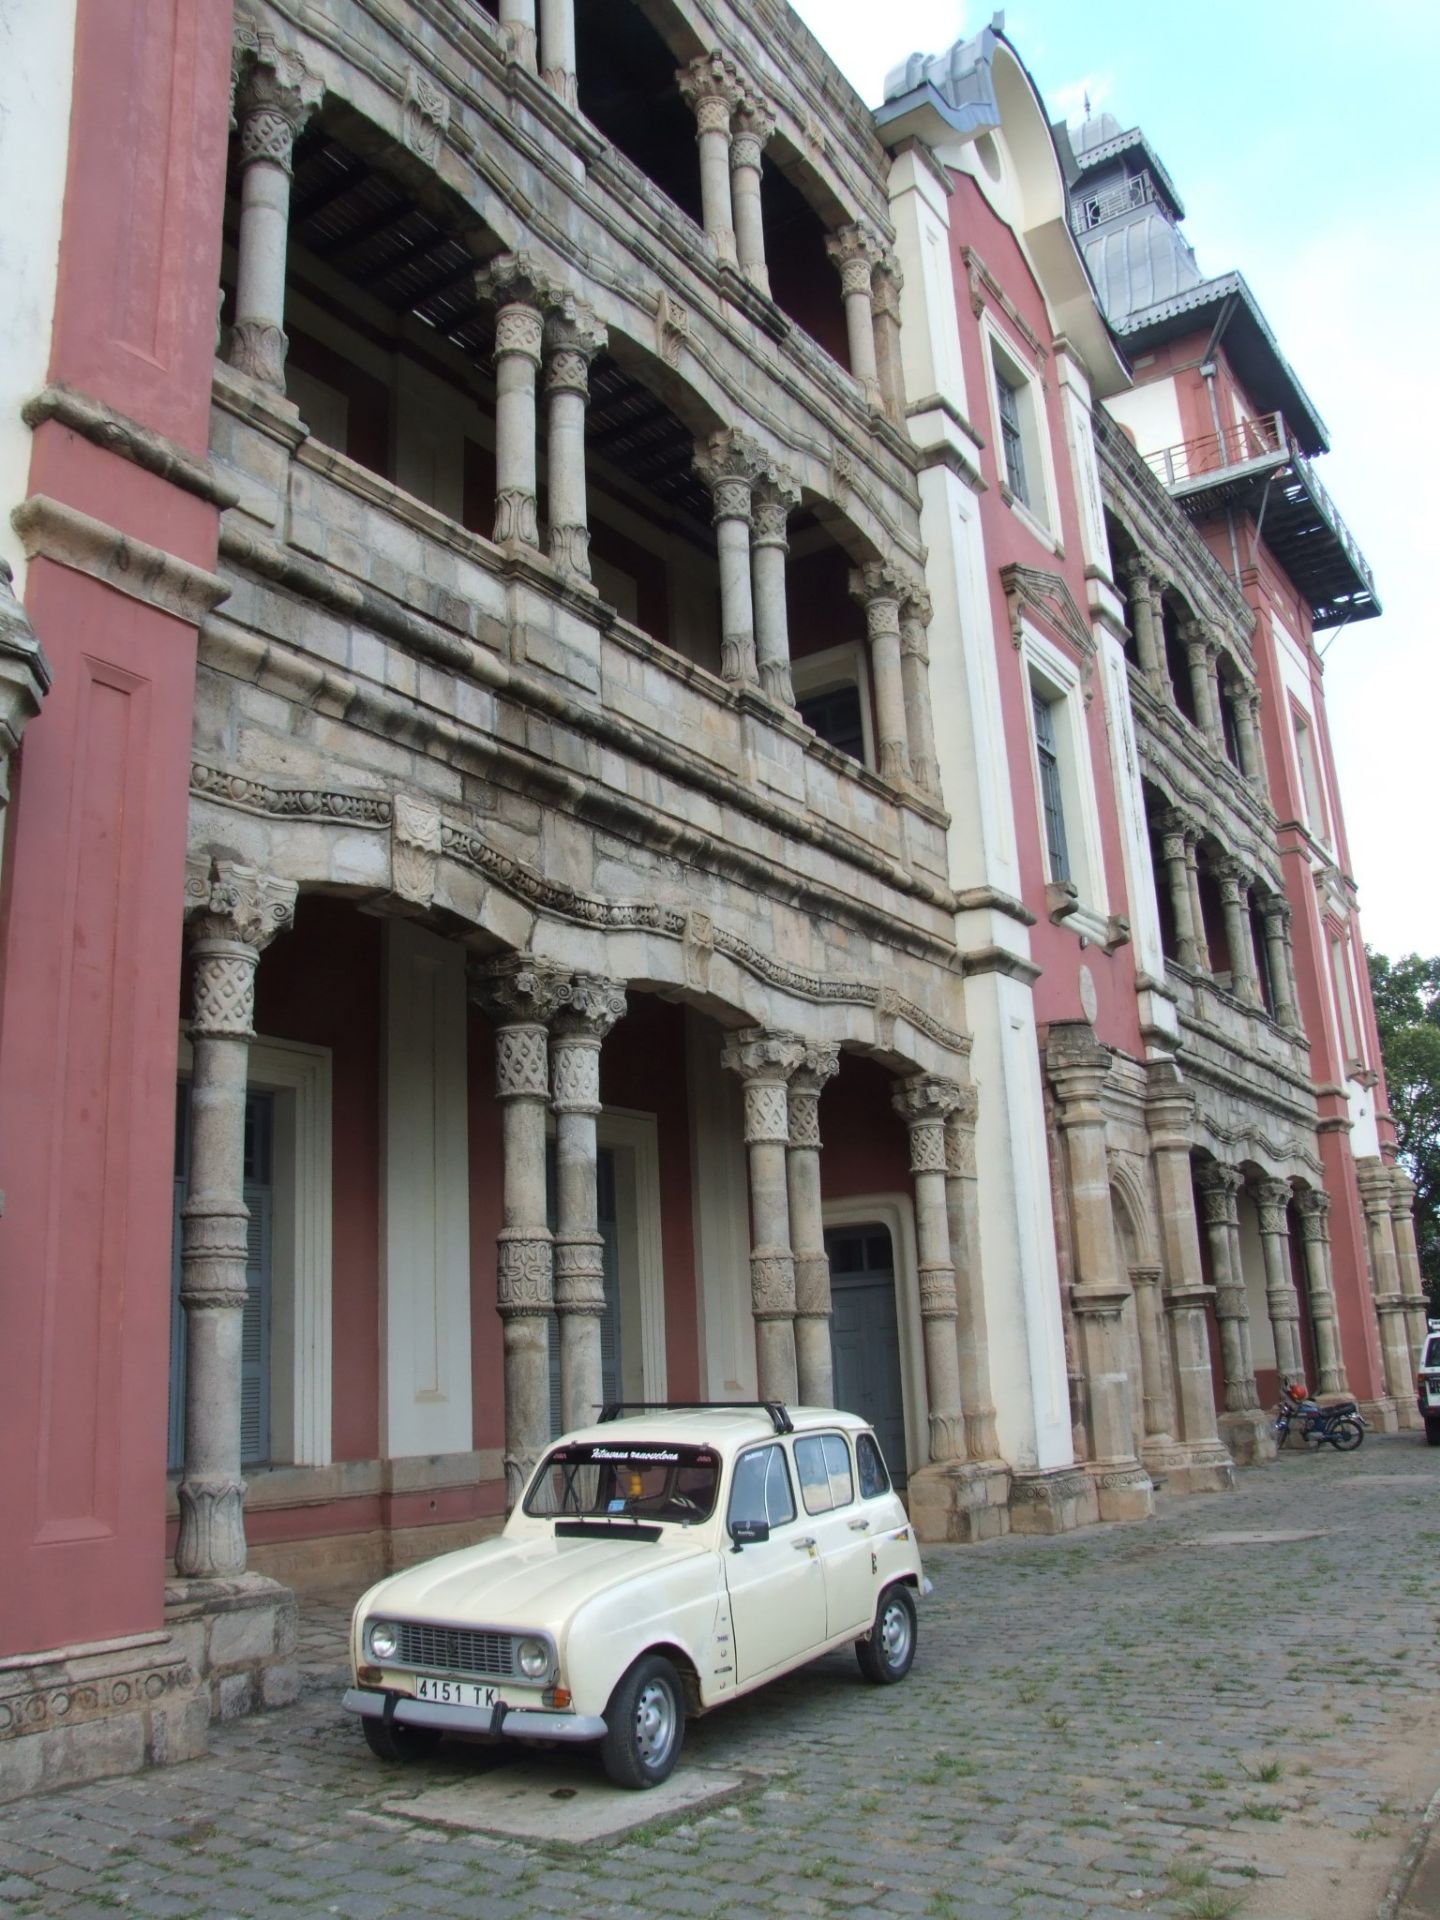 这里是以前马达加斯加岛的总理府，现在这里已经被改造成马达加斯加的一座博物馆。在这里收藏着许多这个国家